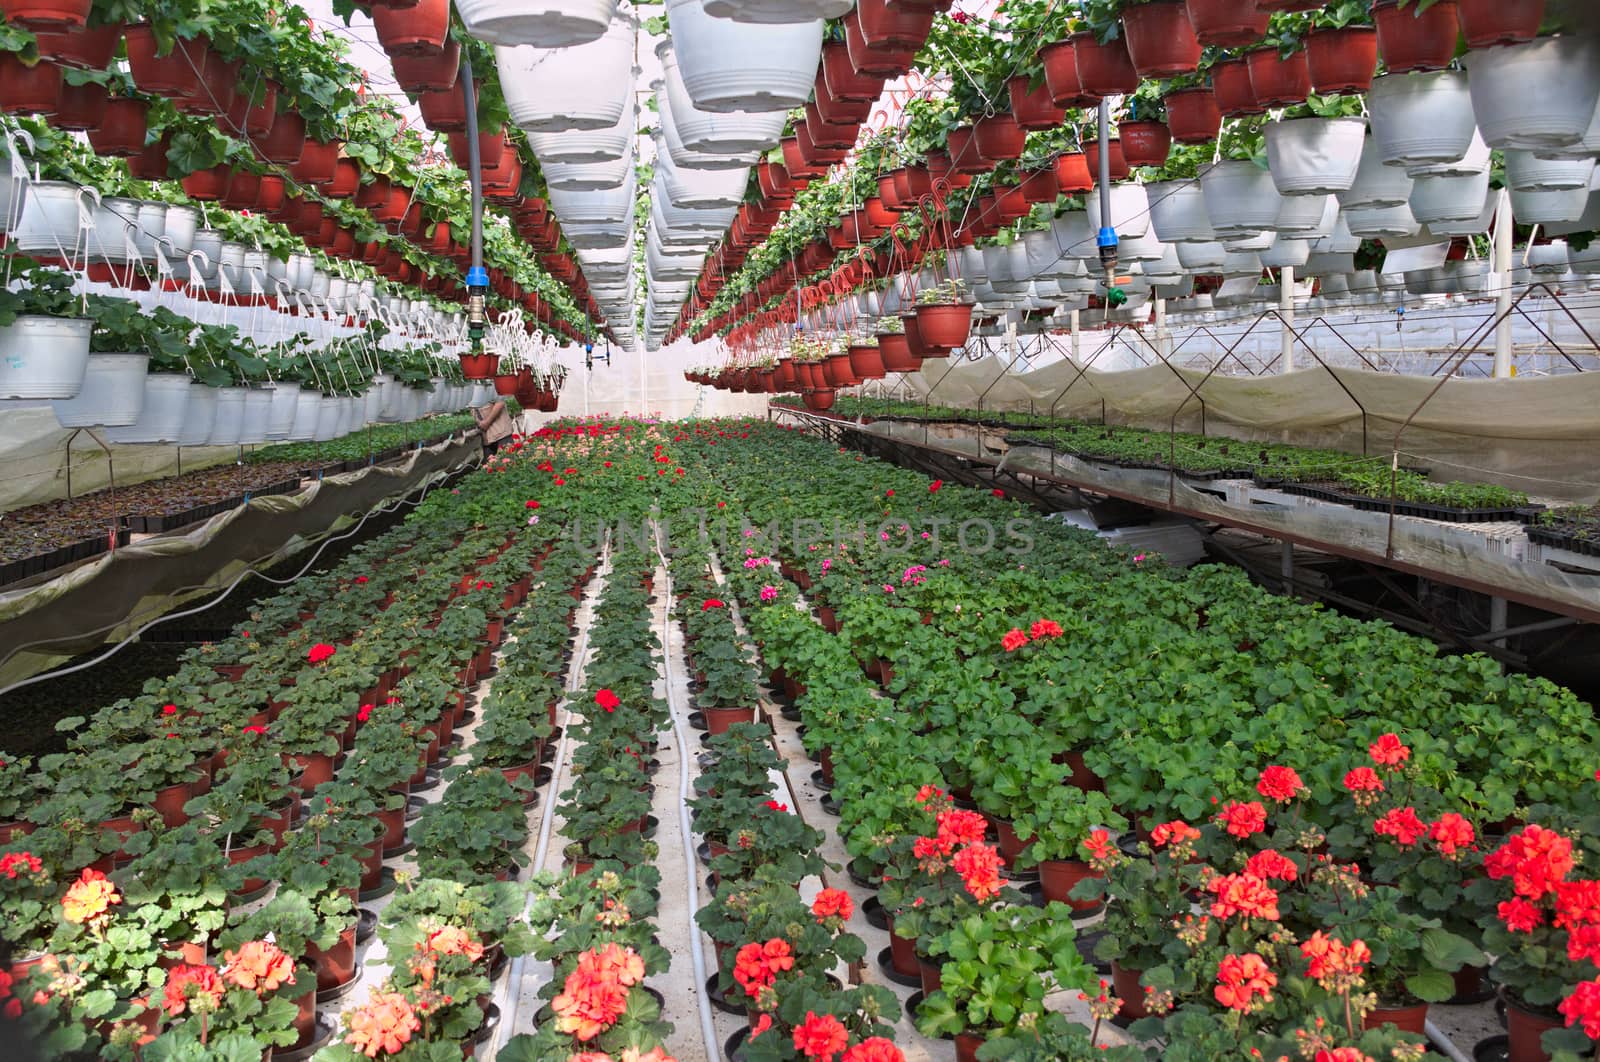 Plant nursery in greenhouse by sheriffkule